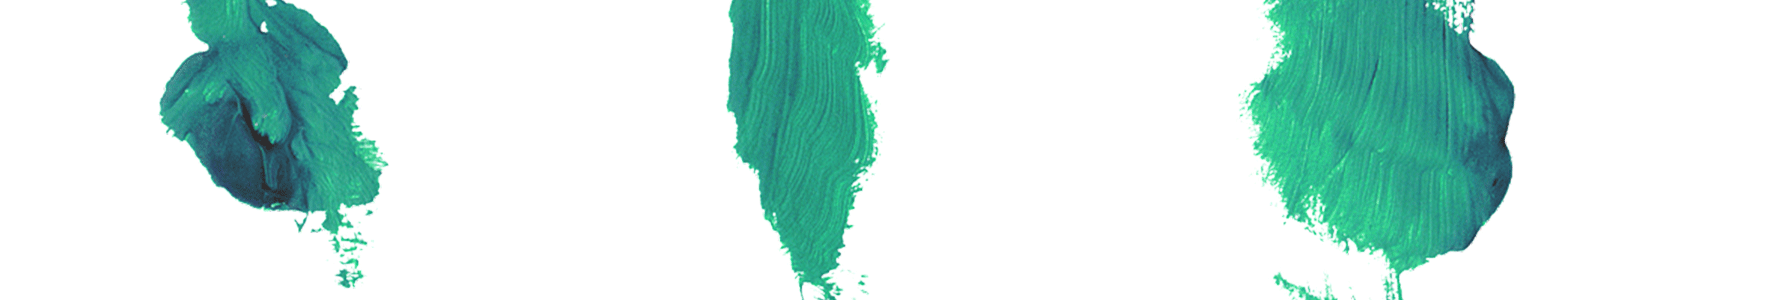 pennellate verdi su fondo bianco